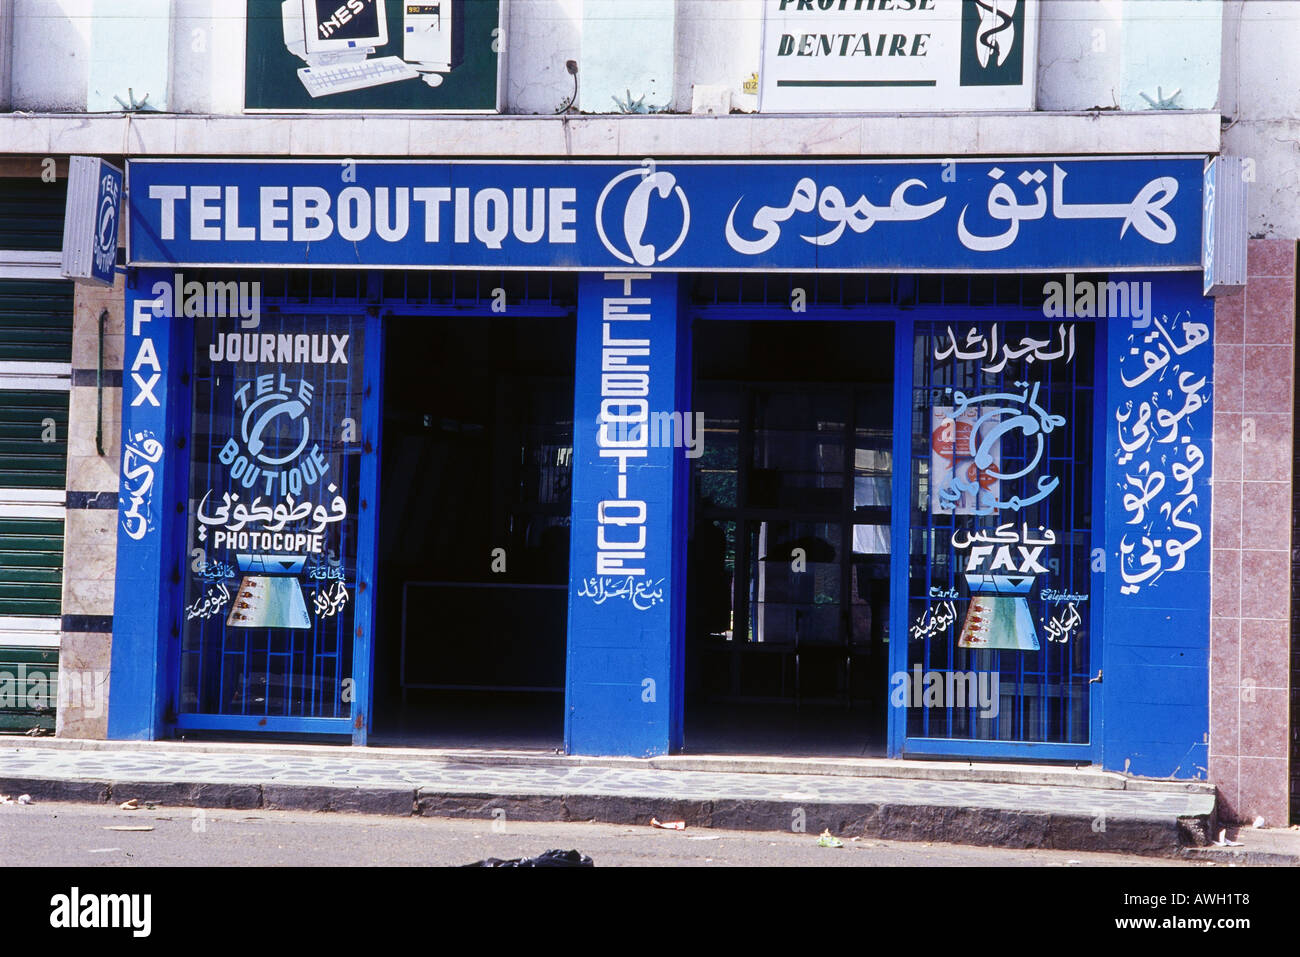 Le Maroc, téléboutique, façade, où vous pouvez passer des appels téléphoniques et fax envoyés Banque D'Images